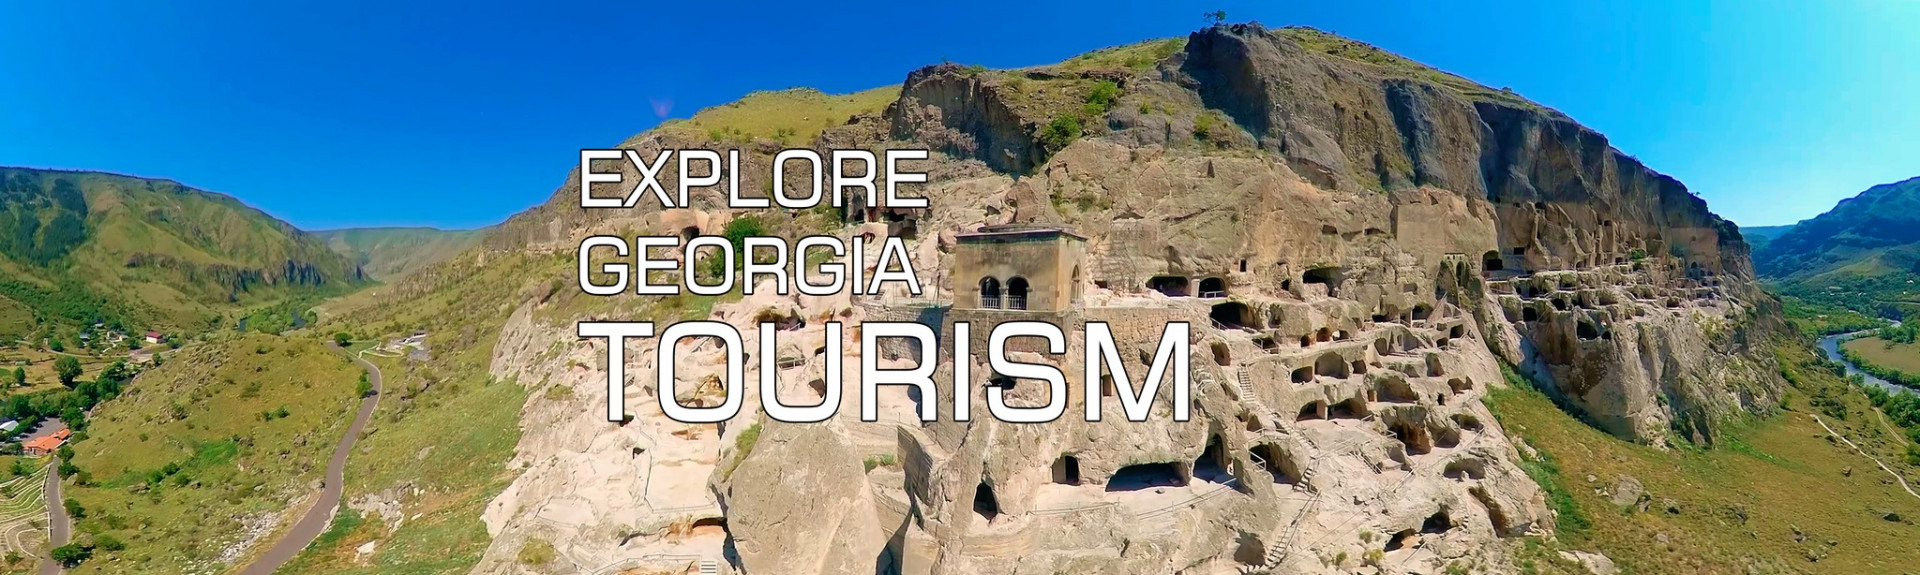 Explore Georgia - Tourism